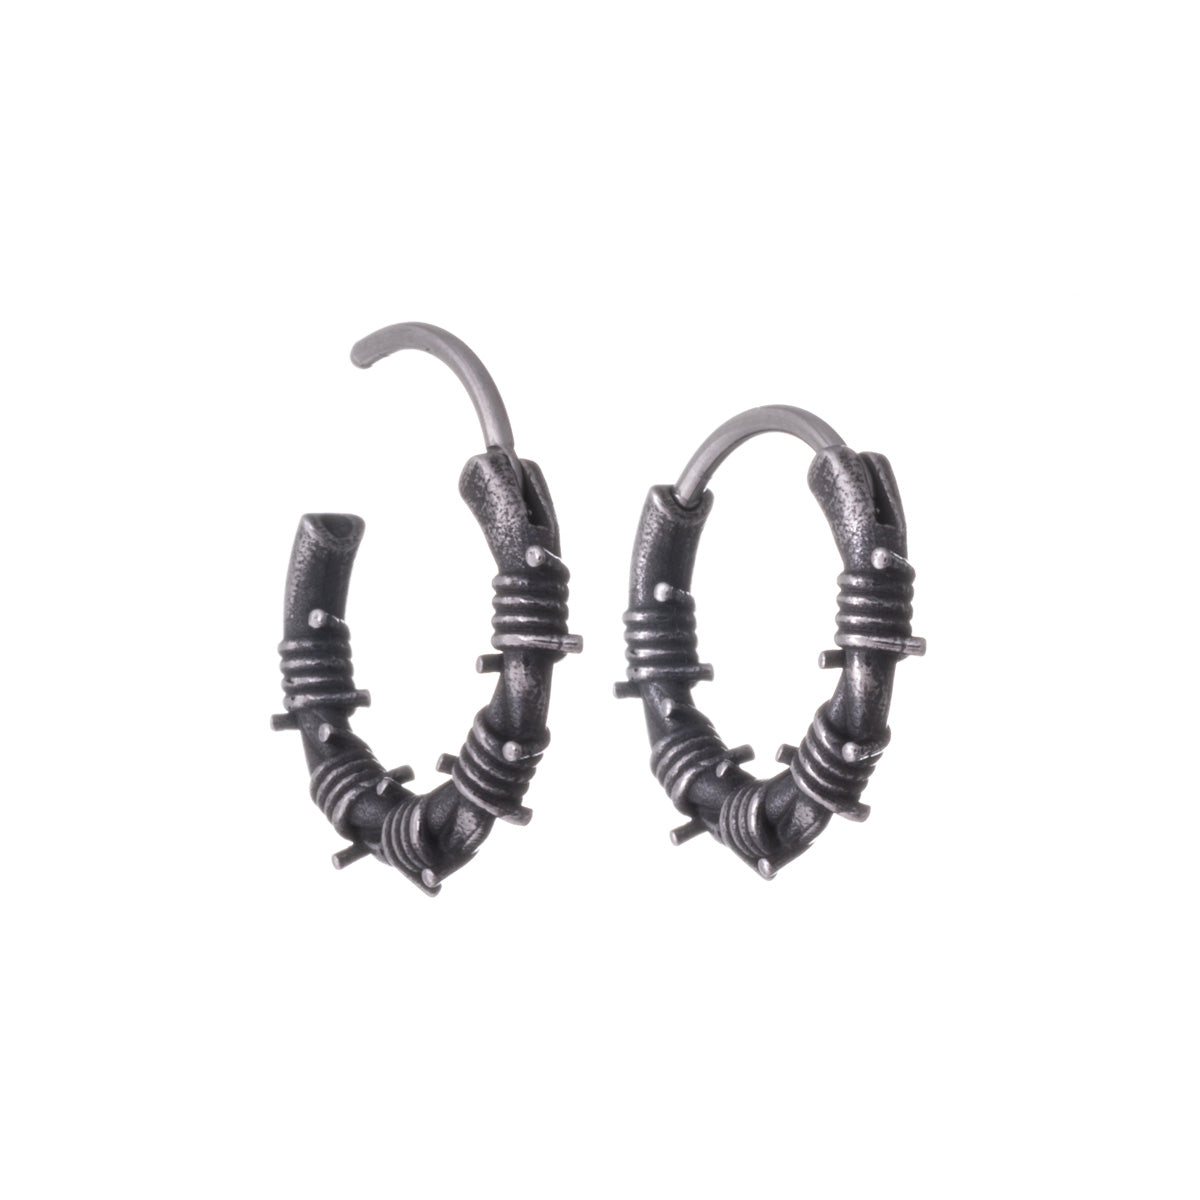 Steel barbed wire earrings (Steel 316L)